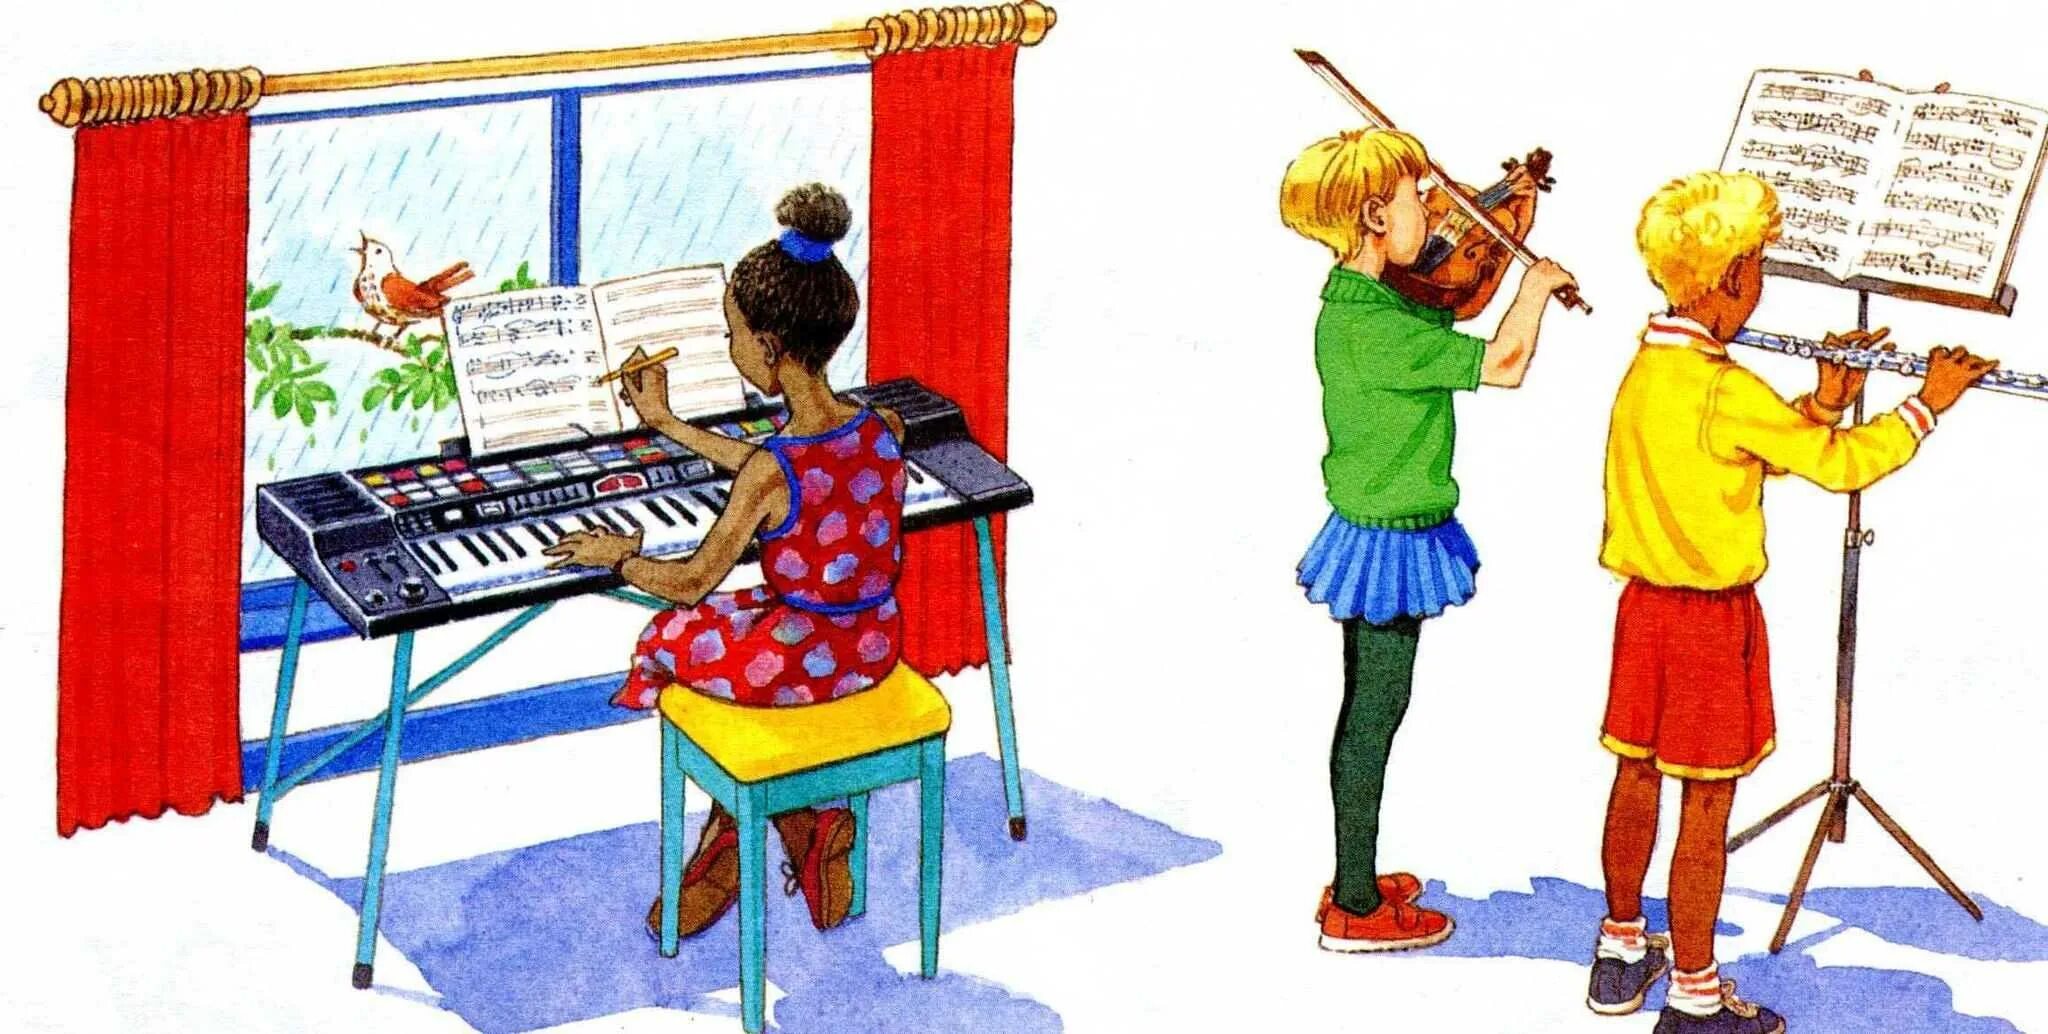 Музыкальный урок для детей. Урок в музыкальной школе. Рисунок на музыкальную тему. Дети на уроке музыки. Учитель музыки иллюстрация.